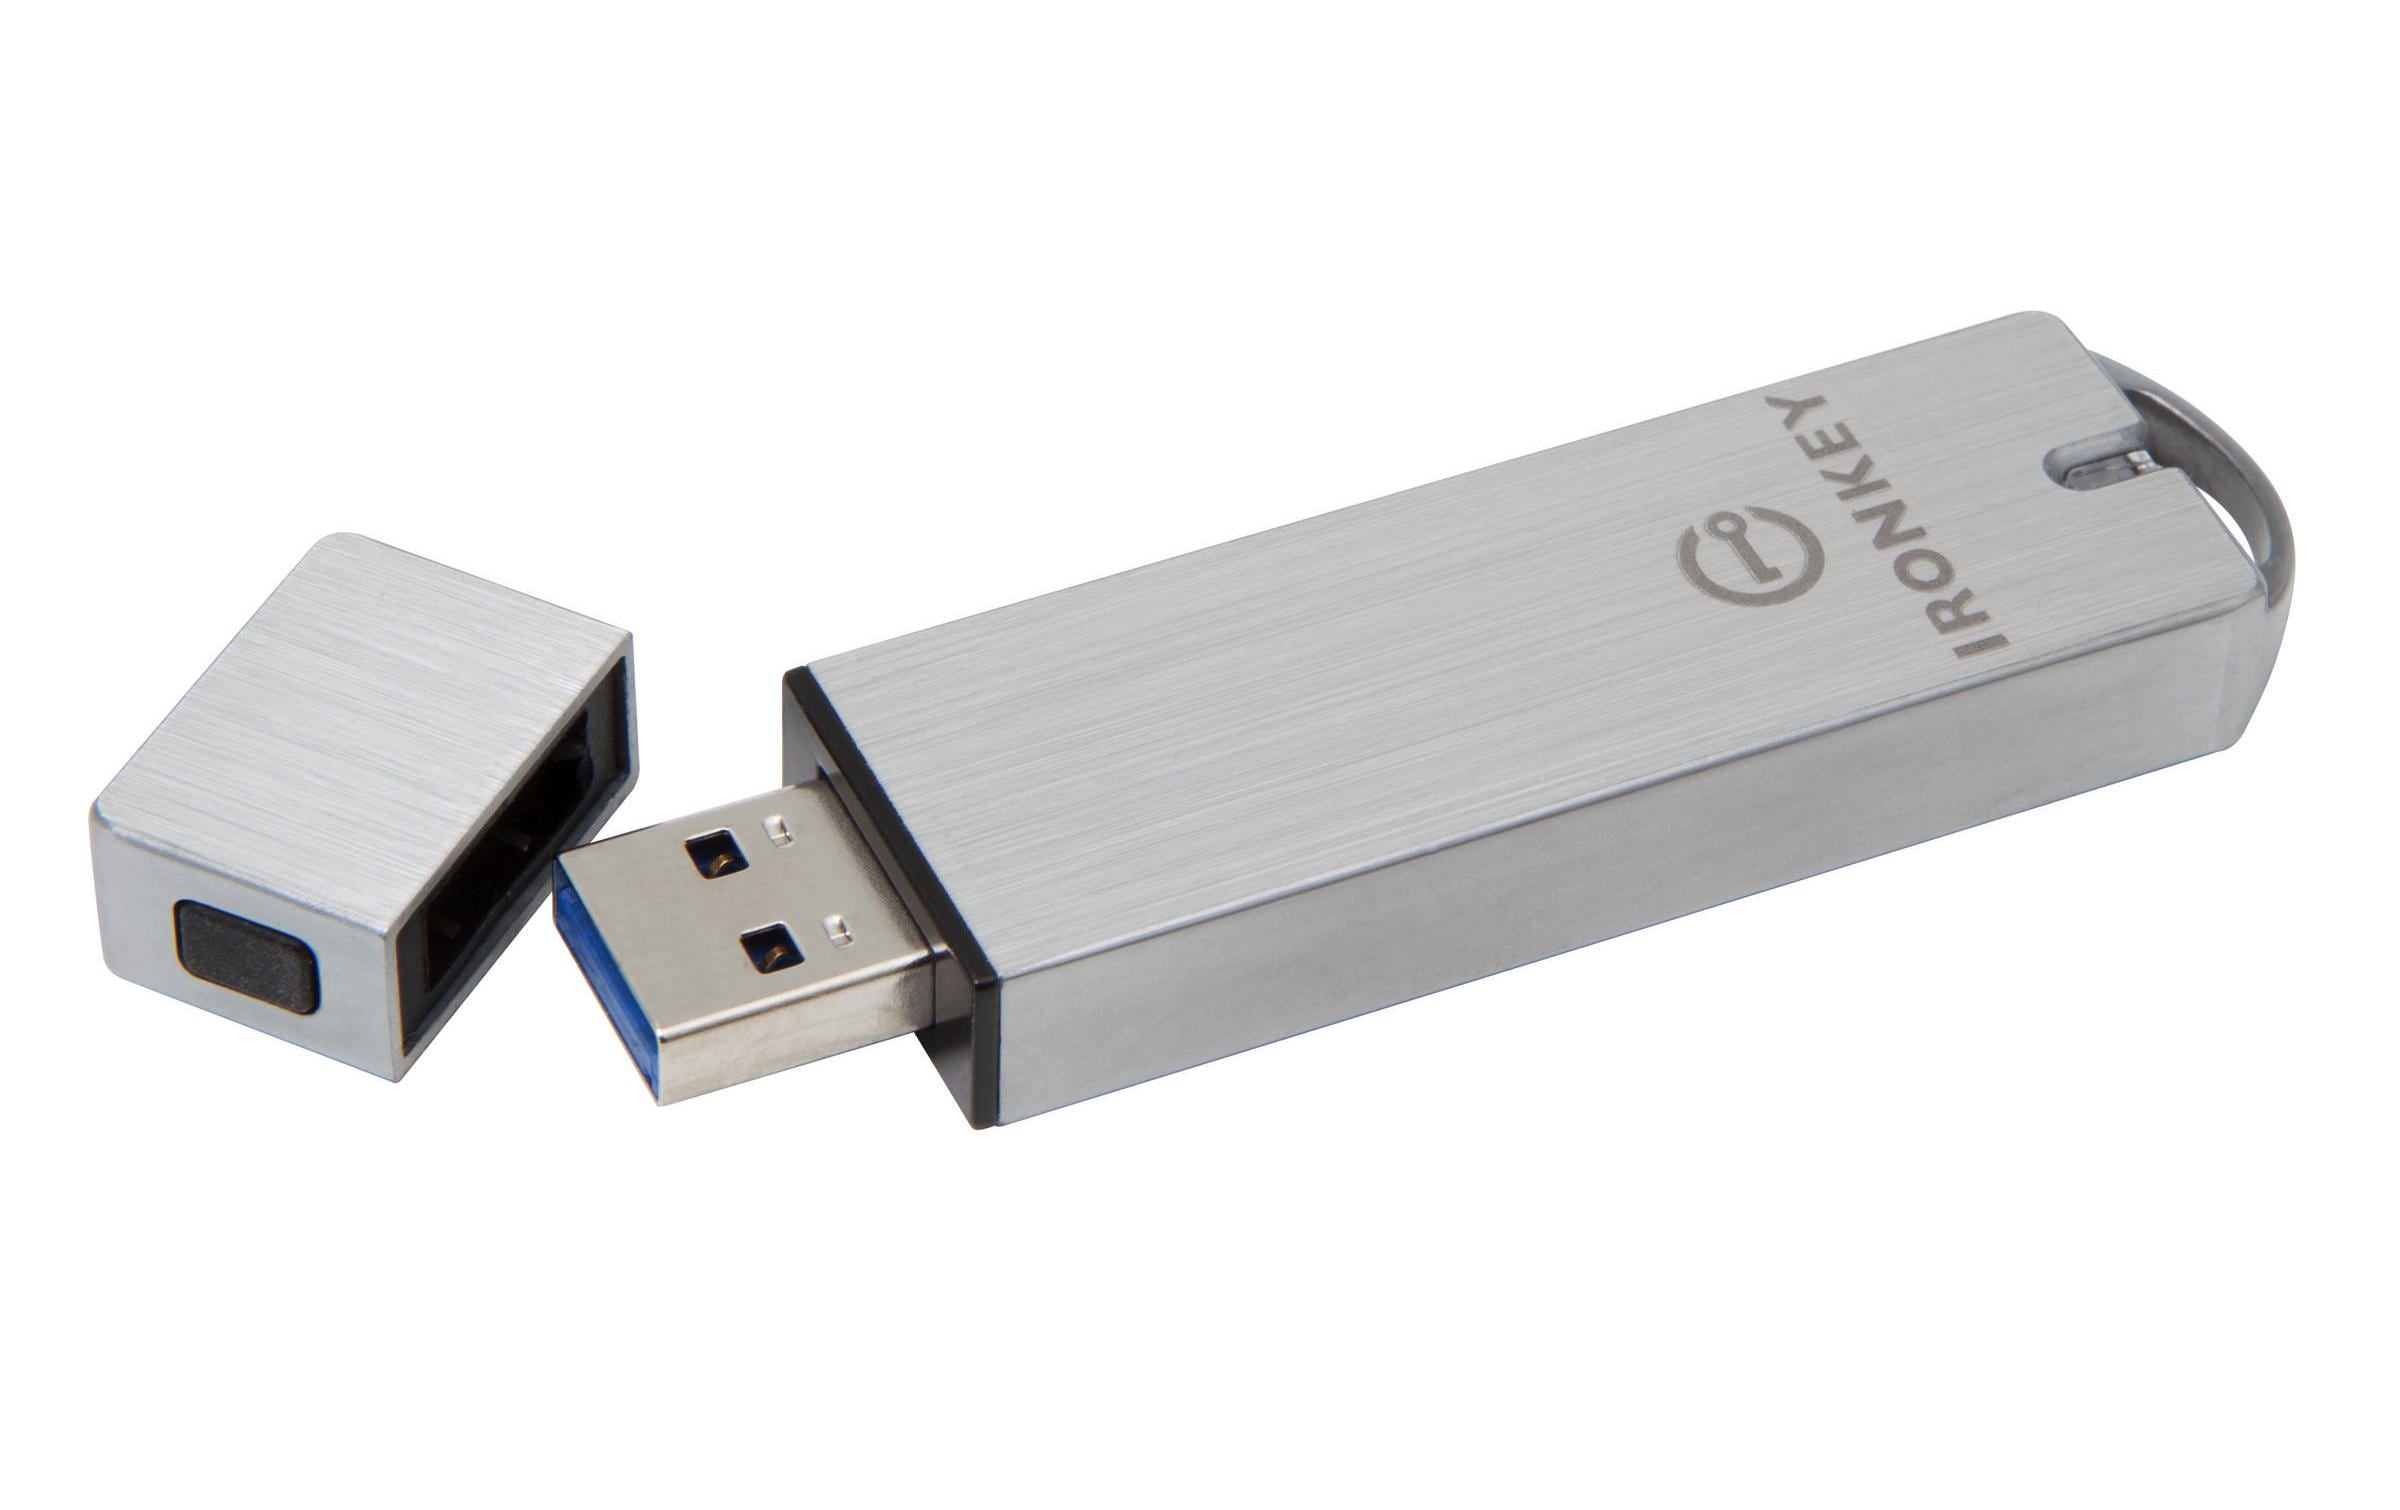 Kingston USB-Stick IronKey Basic S1000 Encrypted 32 GB